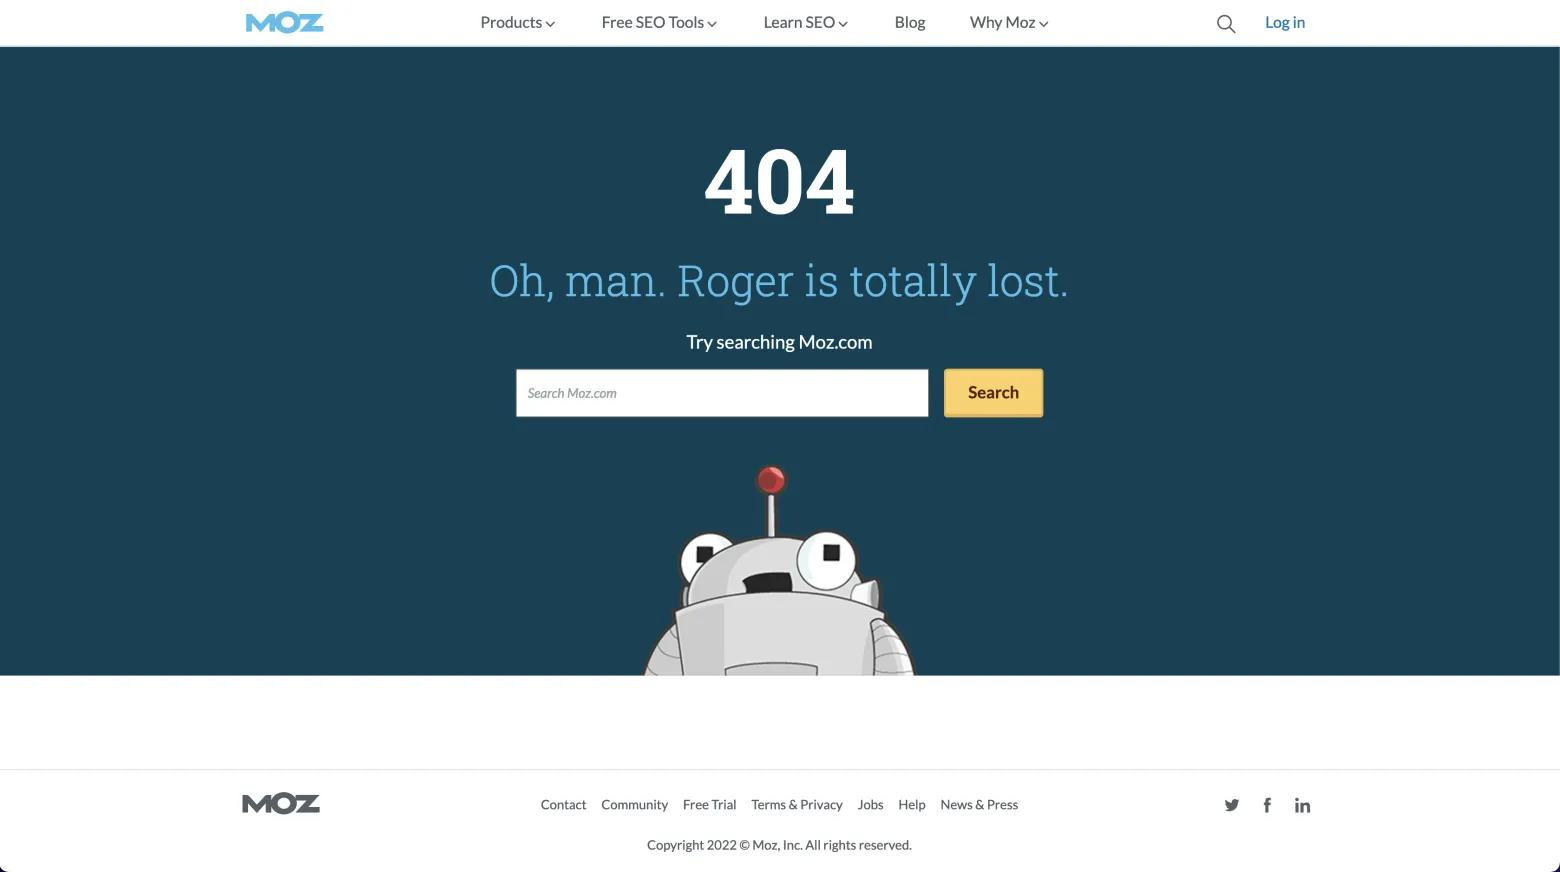 404 pagina van Moz: zoekbalk, kop en beeld duidelijk in het midden van de pagina